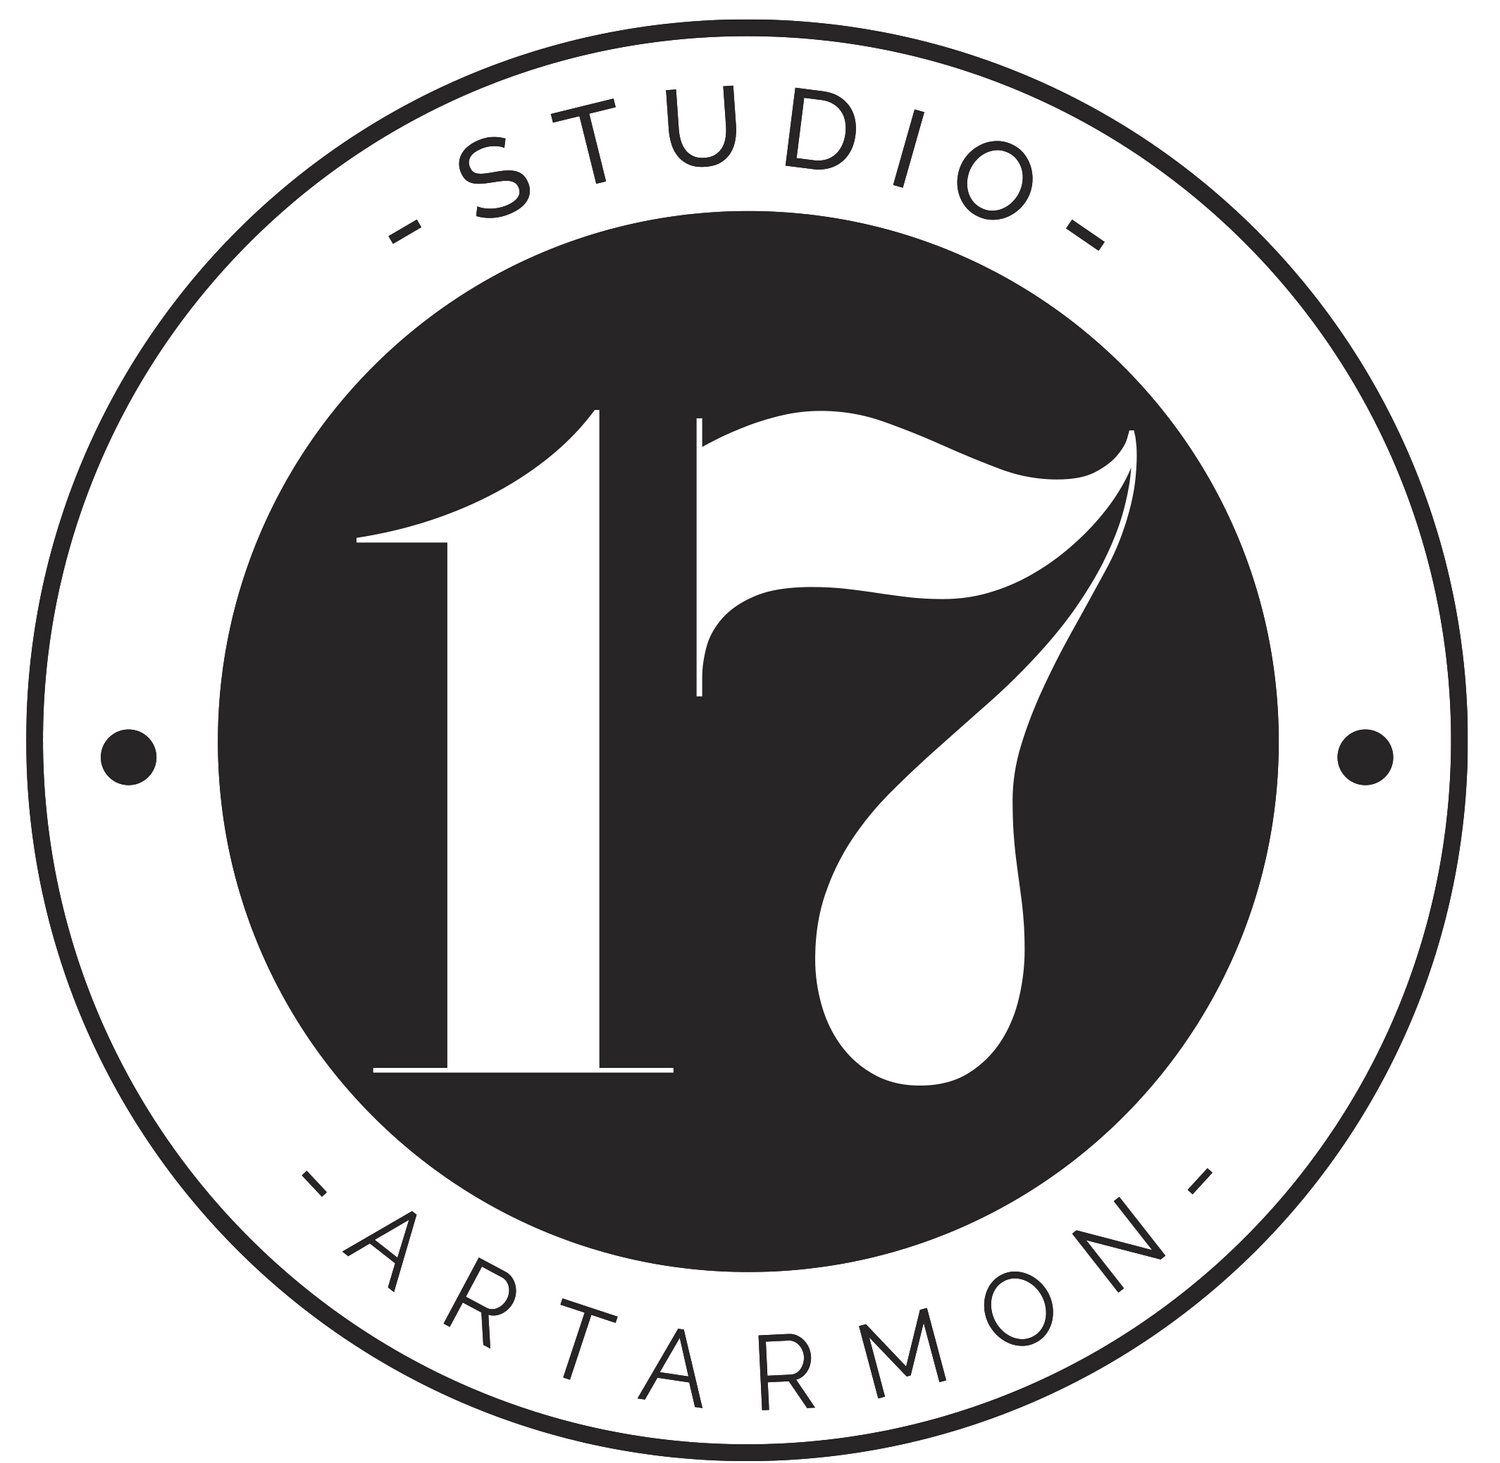 Studio 17 Artarmon